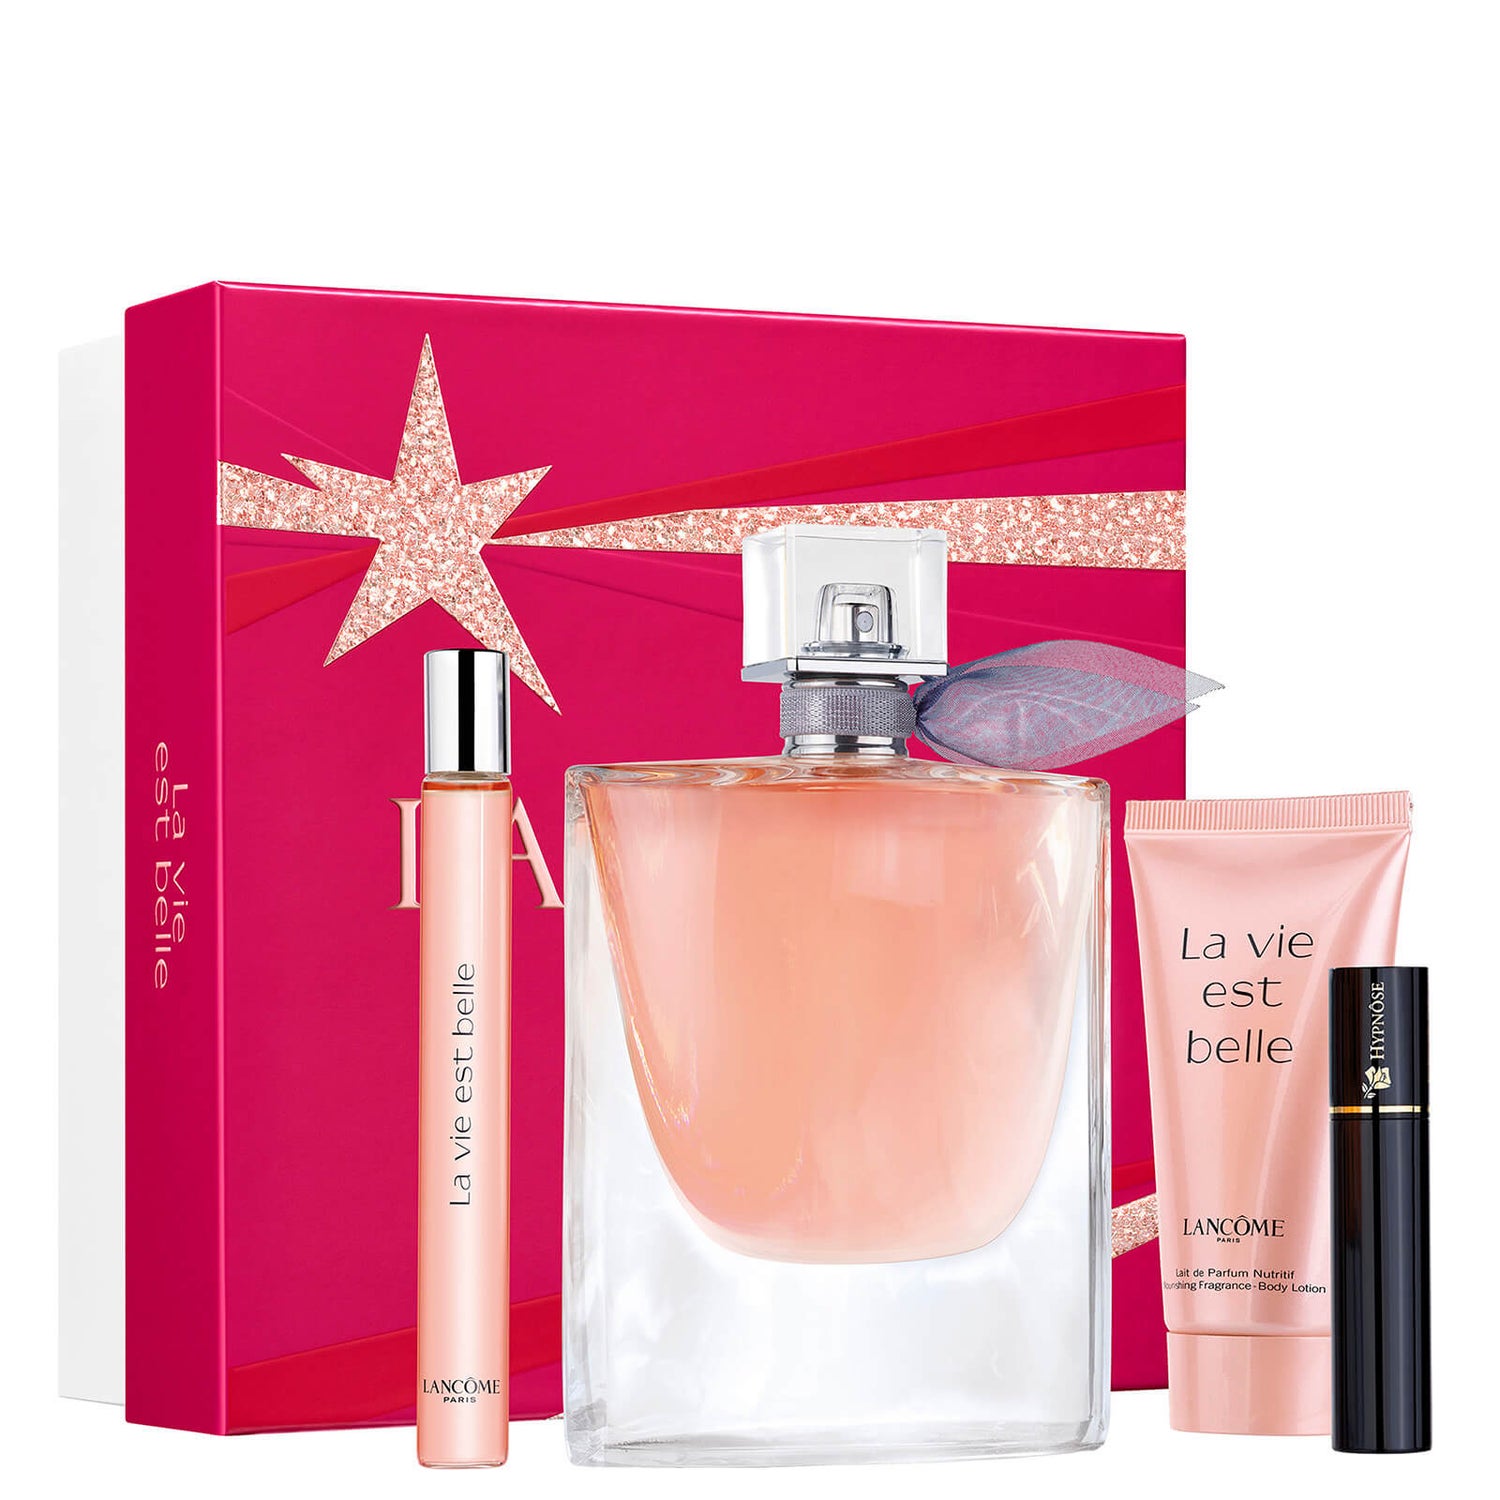 Lancôme La Vie Est Belle Eau de Parfum 100ml Christmas Gift Set (Worth £125.00)